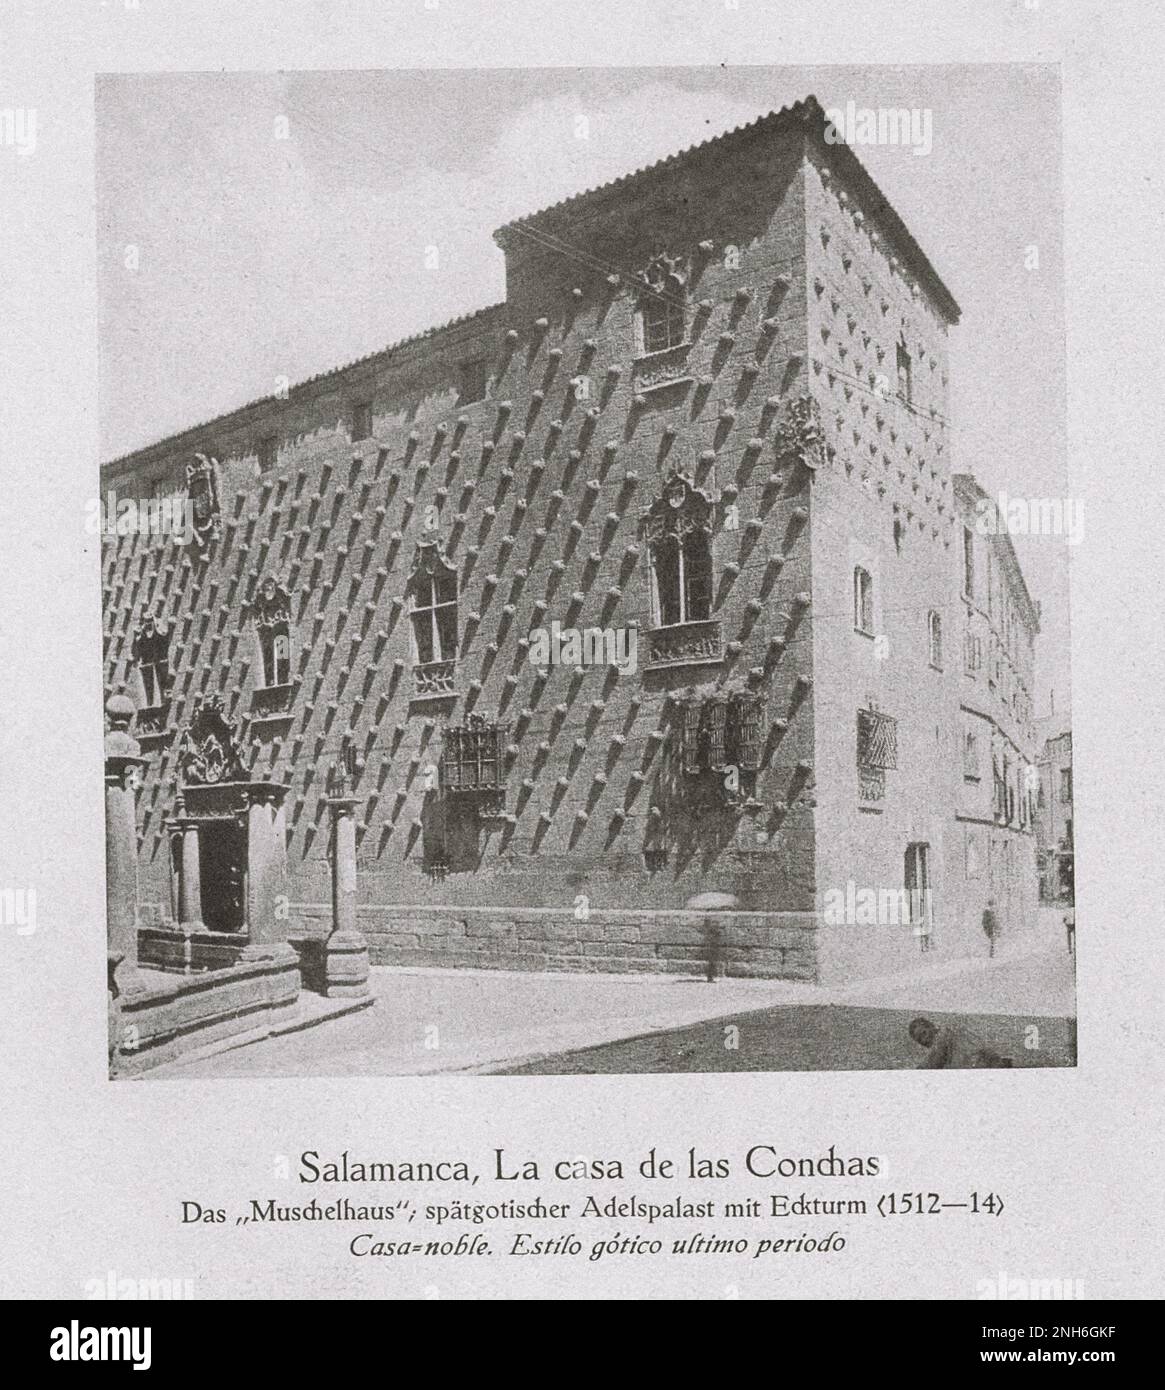 Architettura della Spagna Vecchia. Foto d'epoca di Casa de las Conchas a Salamanca. La 'Shell House', palazzo nobiliare tardo gotico con torre d'angolo (1512-1514) Foto Stock